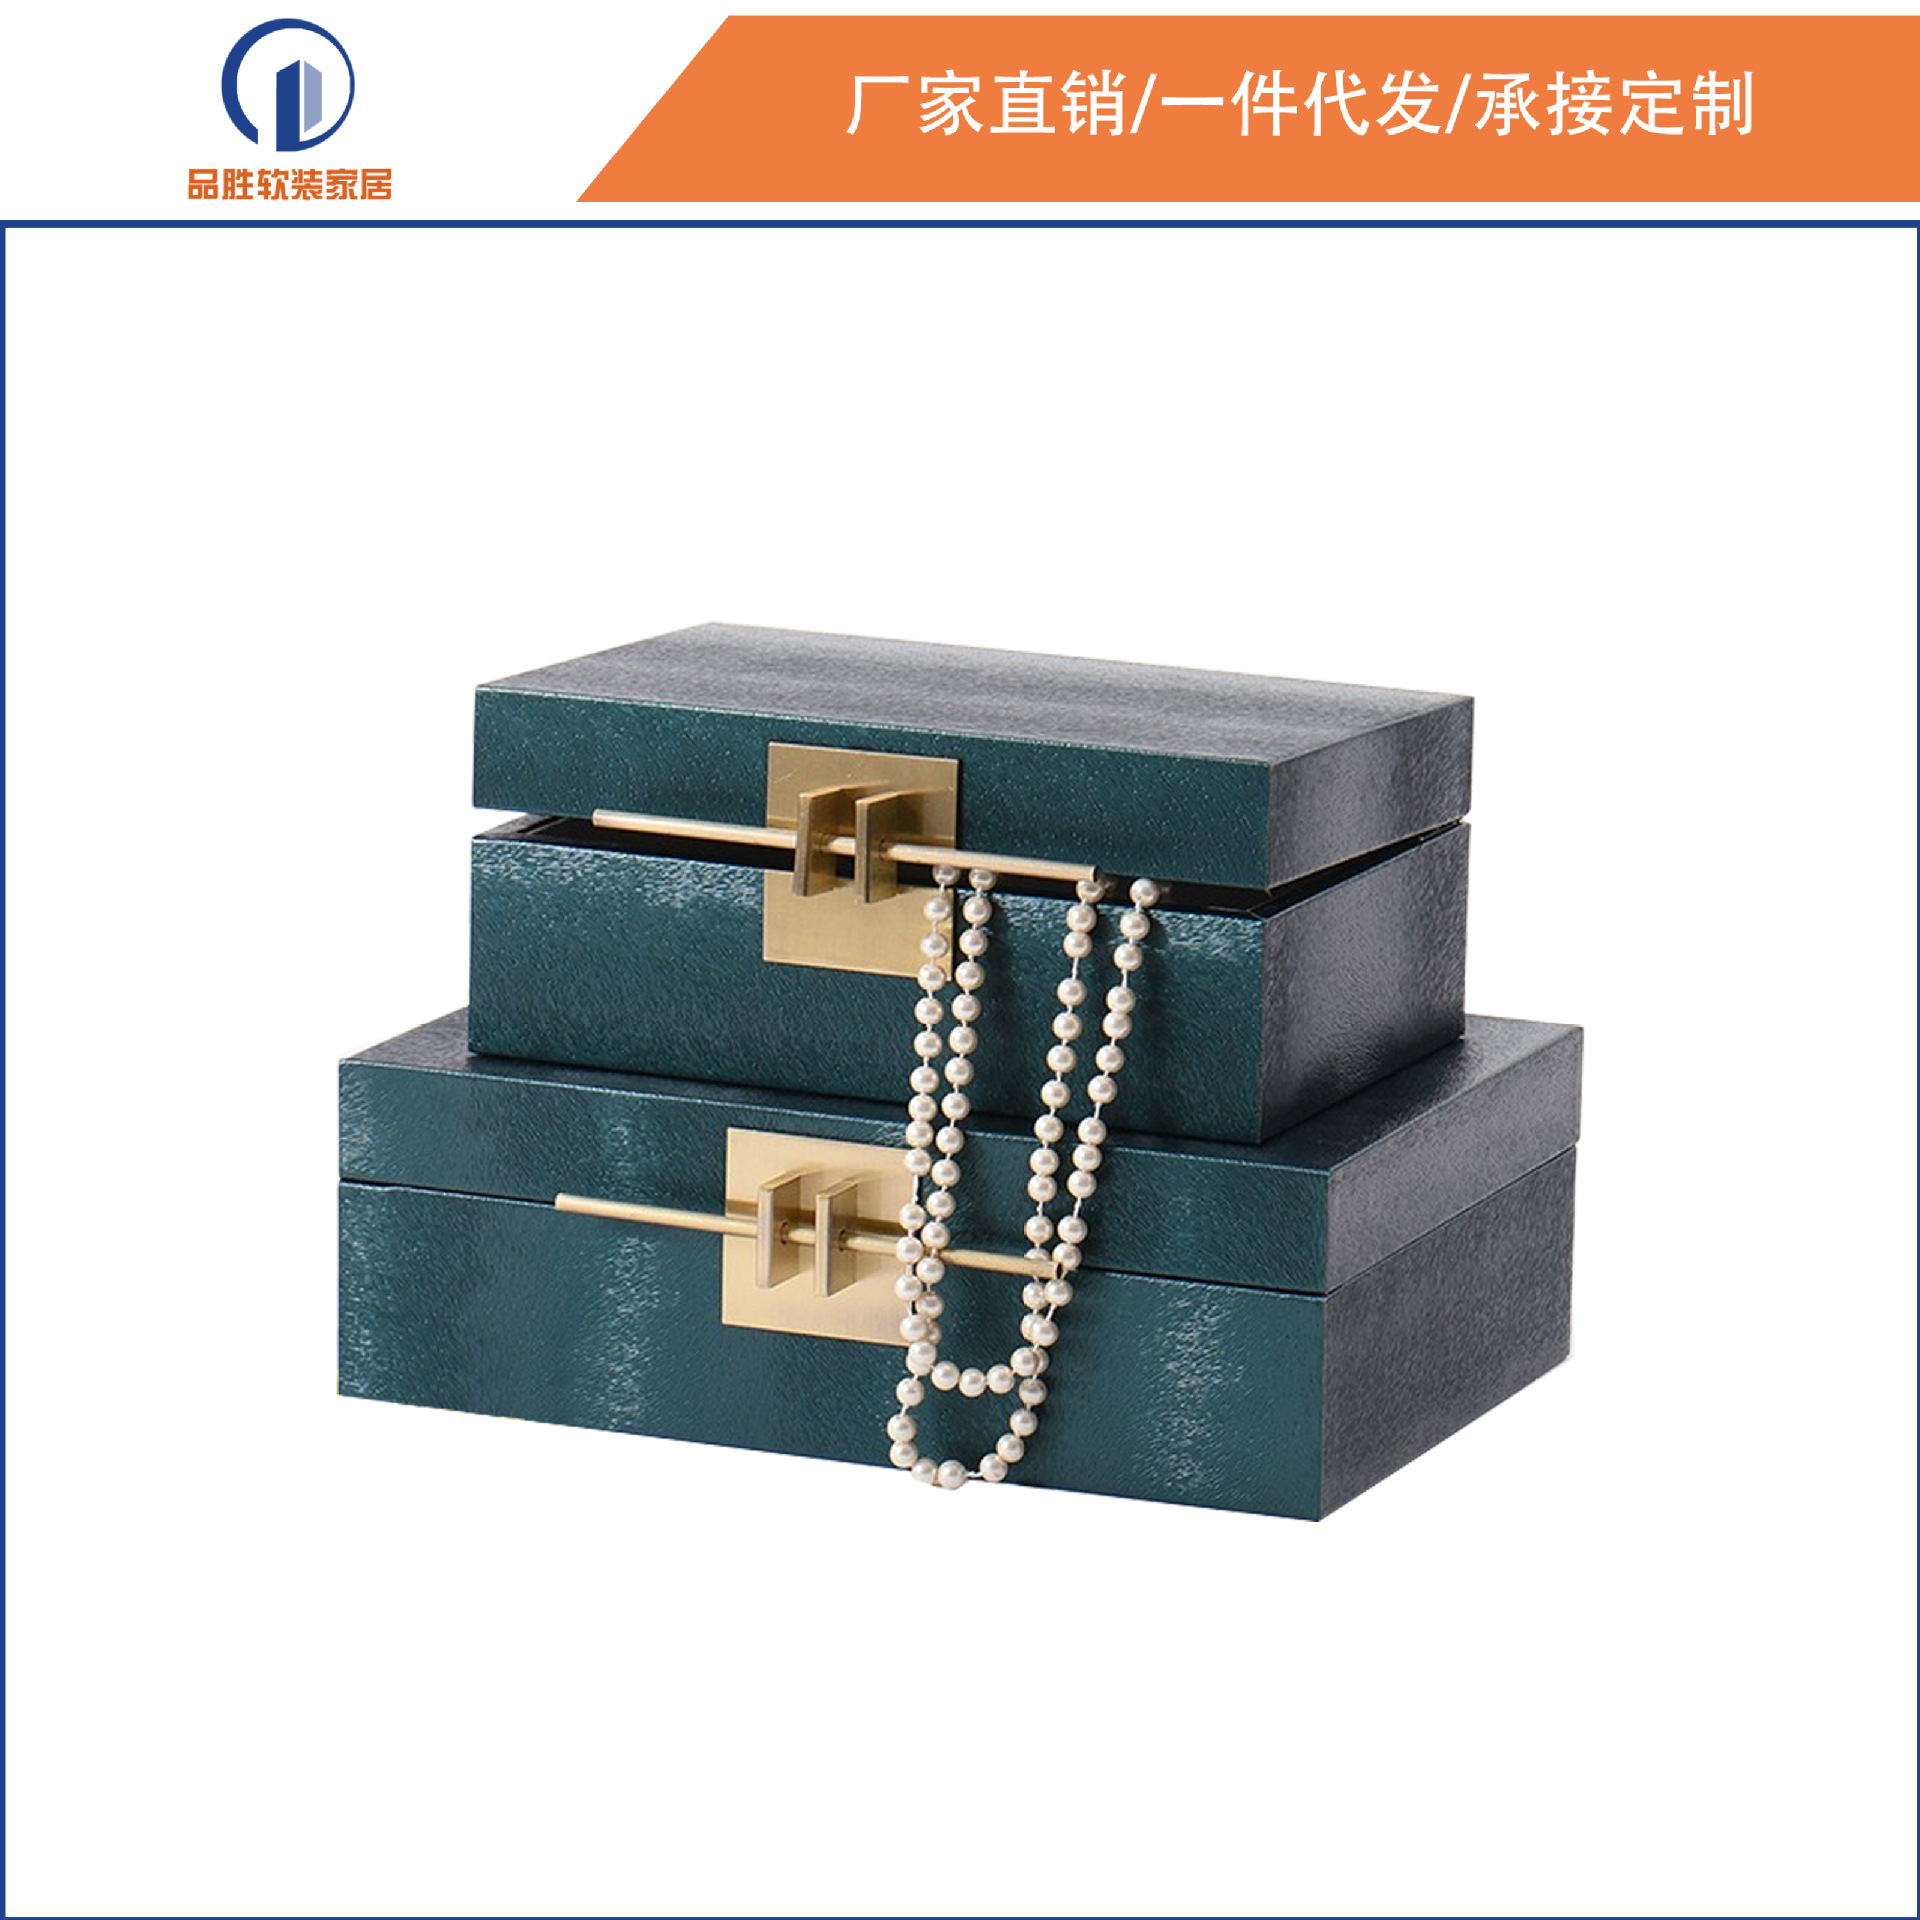 新中式绿色斜纹装饰盒摆件样板间衣帽间床头柜创意家居软装饰品